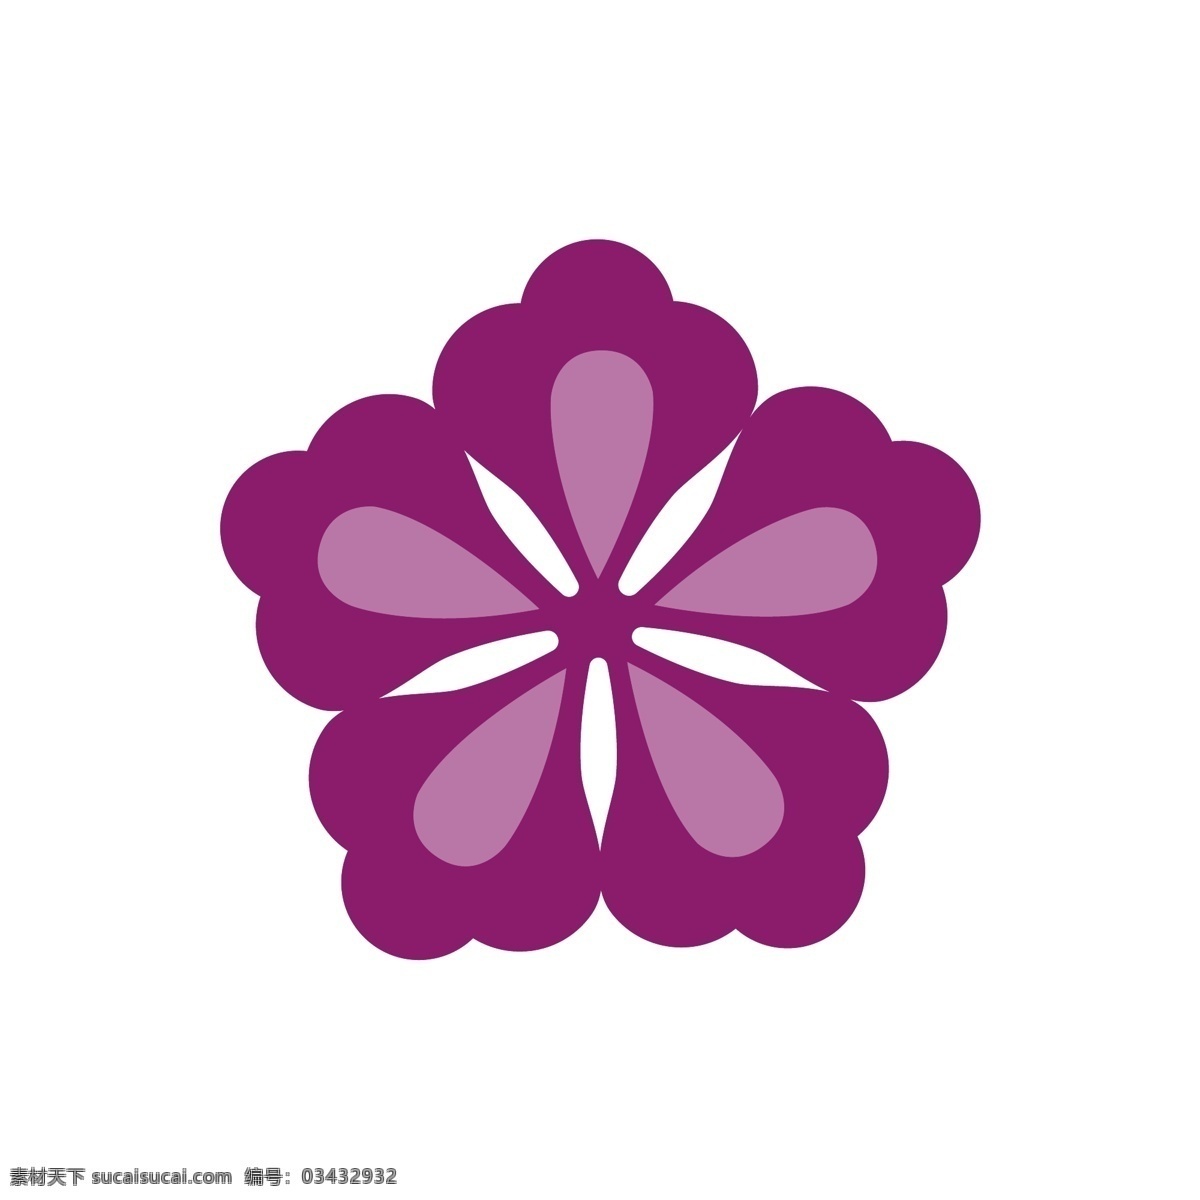 几何 花 形 矢量 元素 紫色 花纹设计 装饰花纹 矢量花纹 ai素材